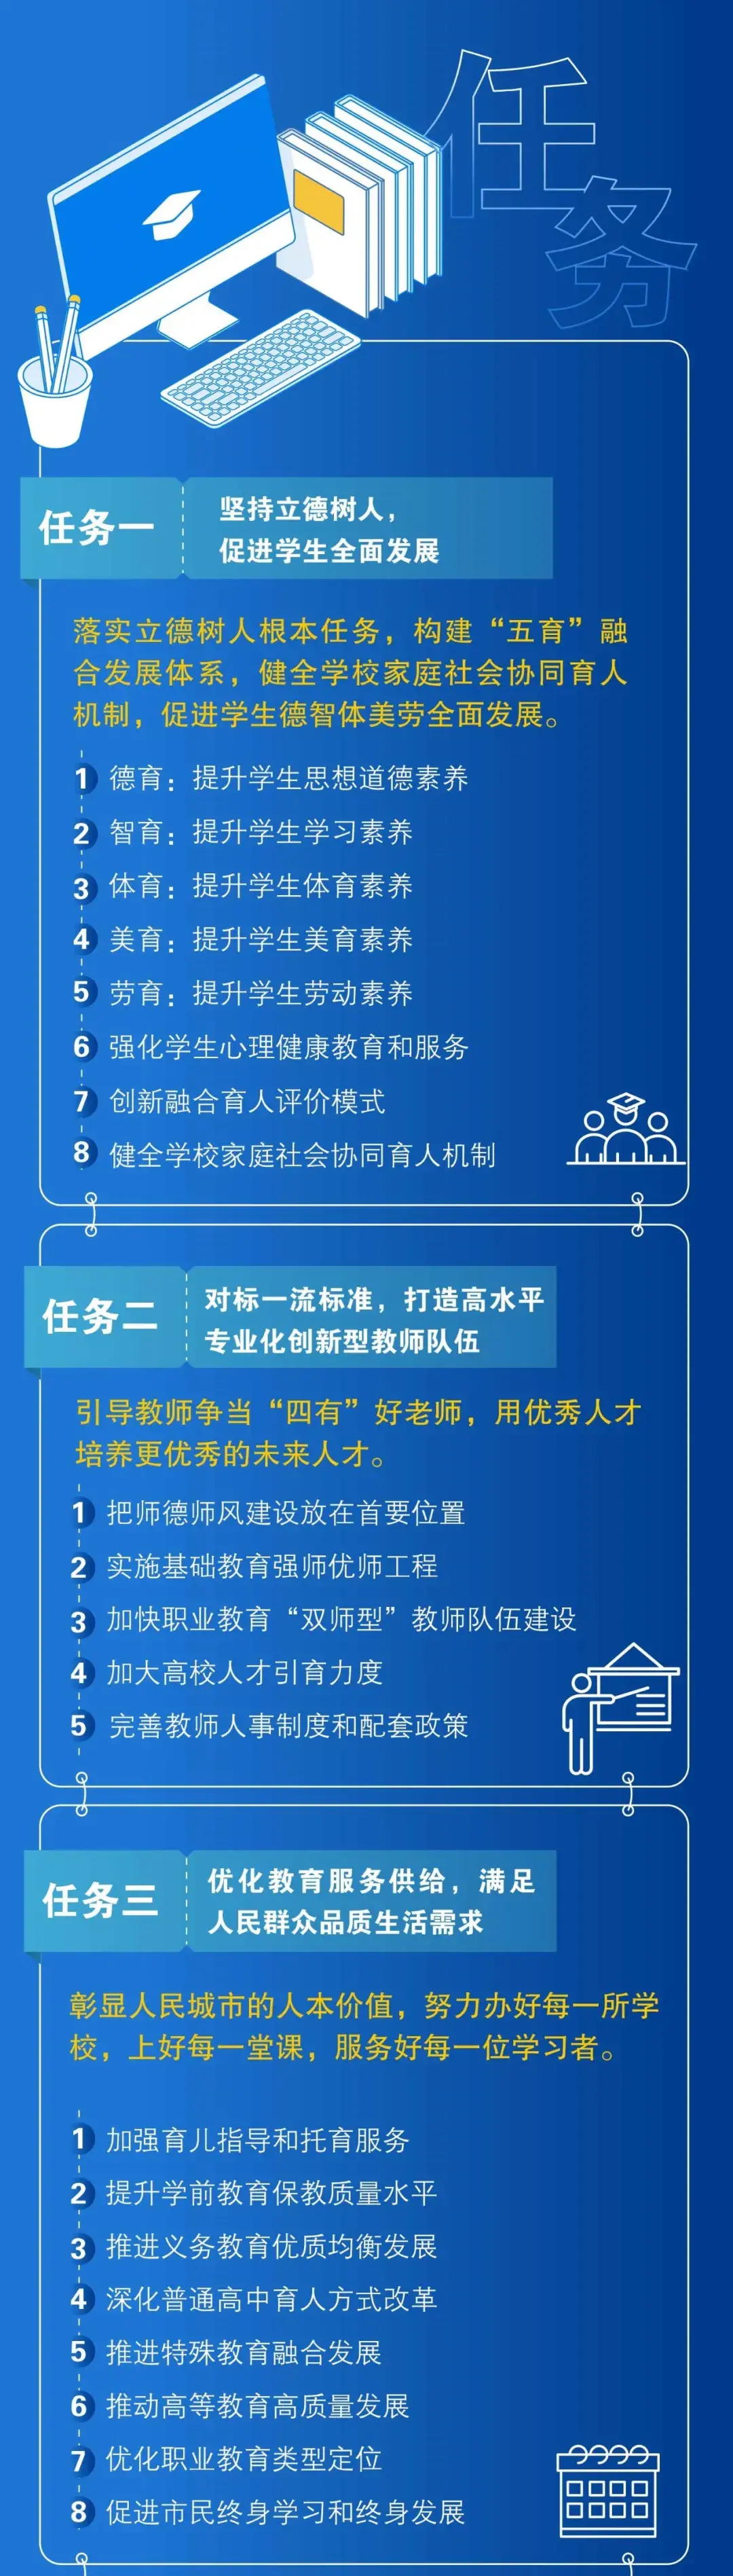 上海教师教育十四五平台课程,教师教育管理平台登录